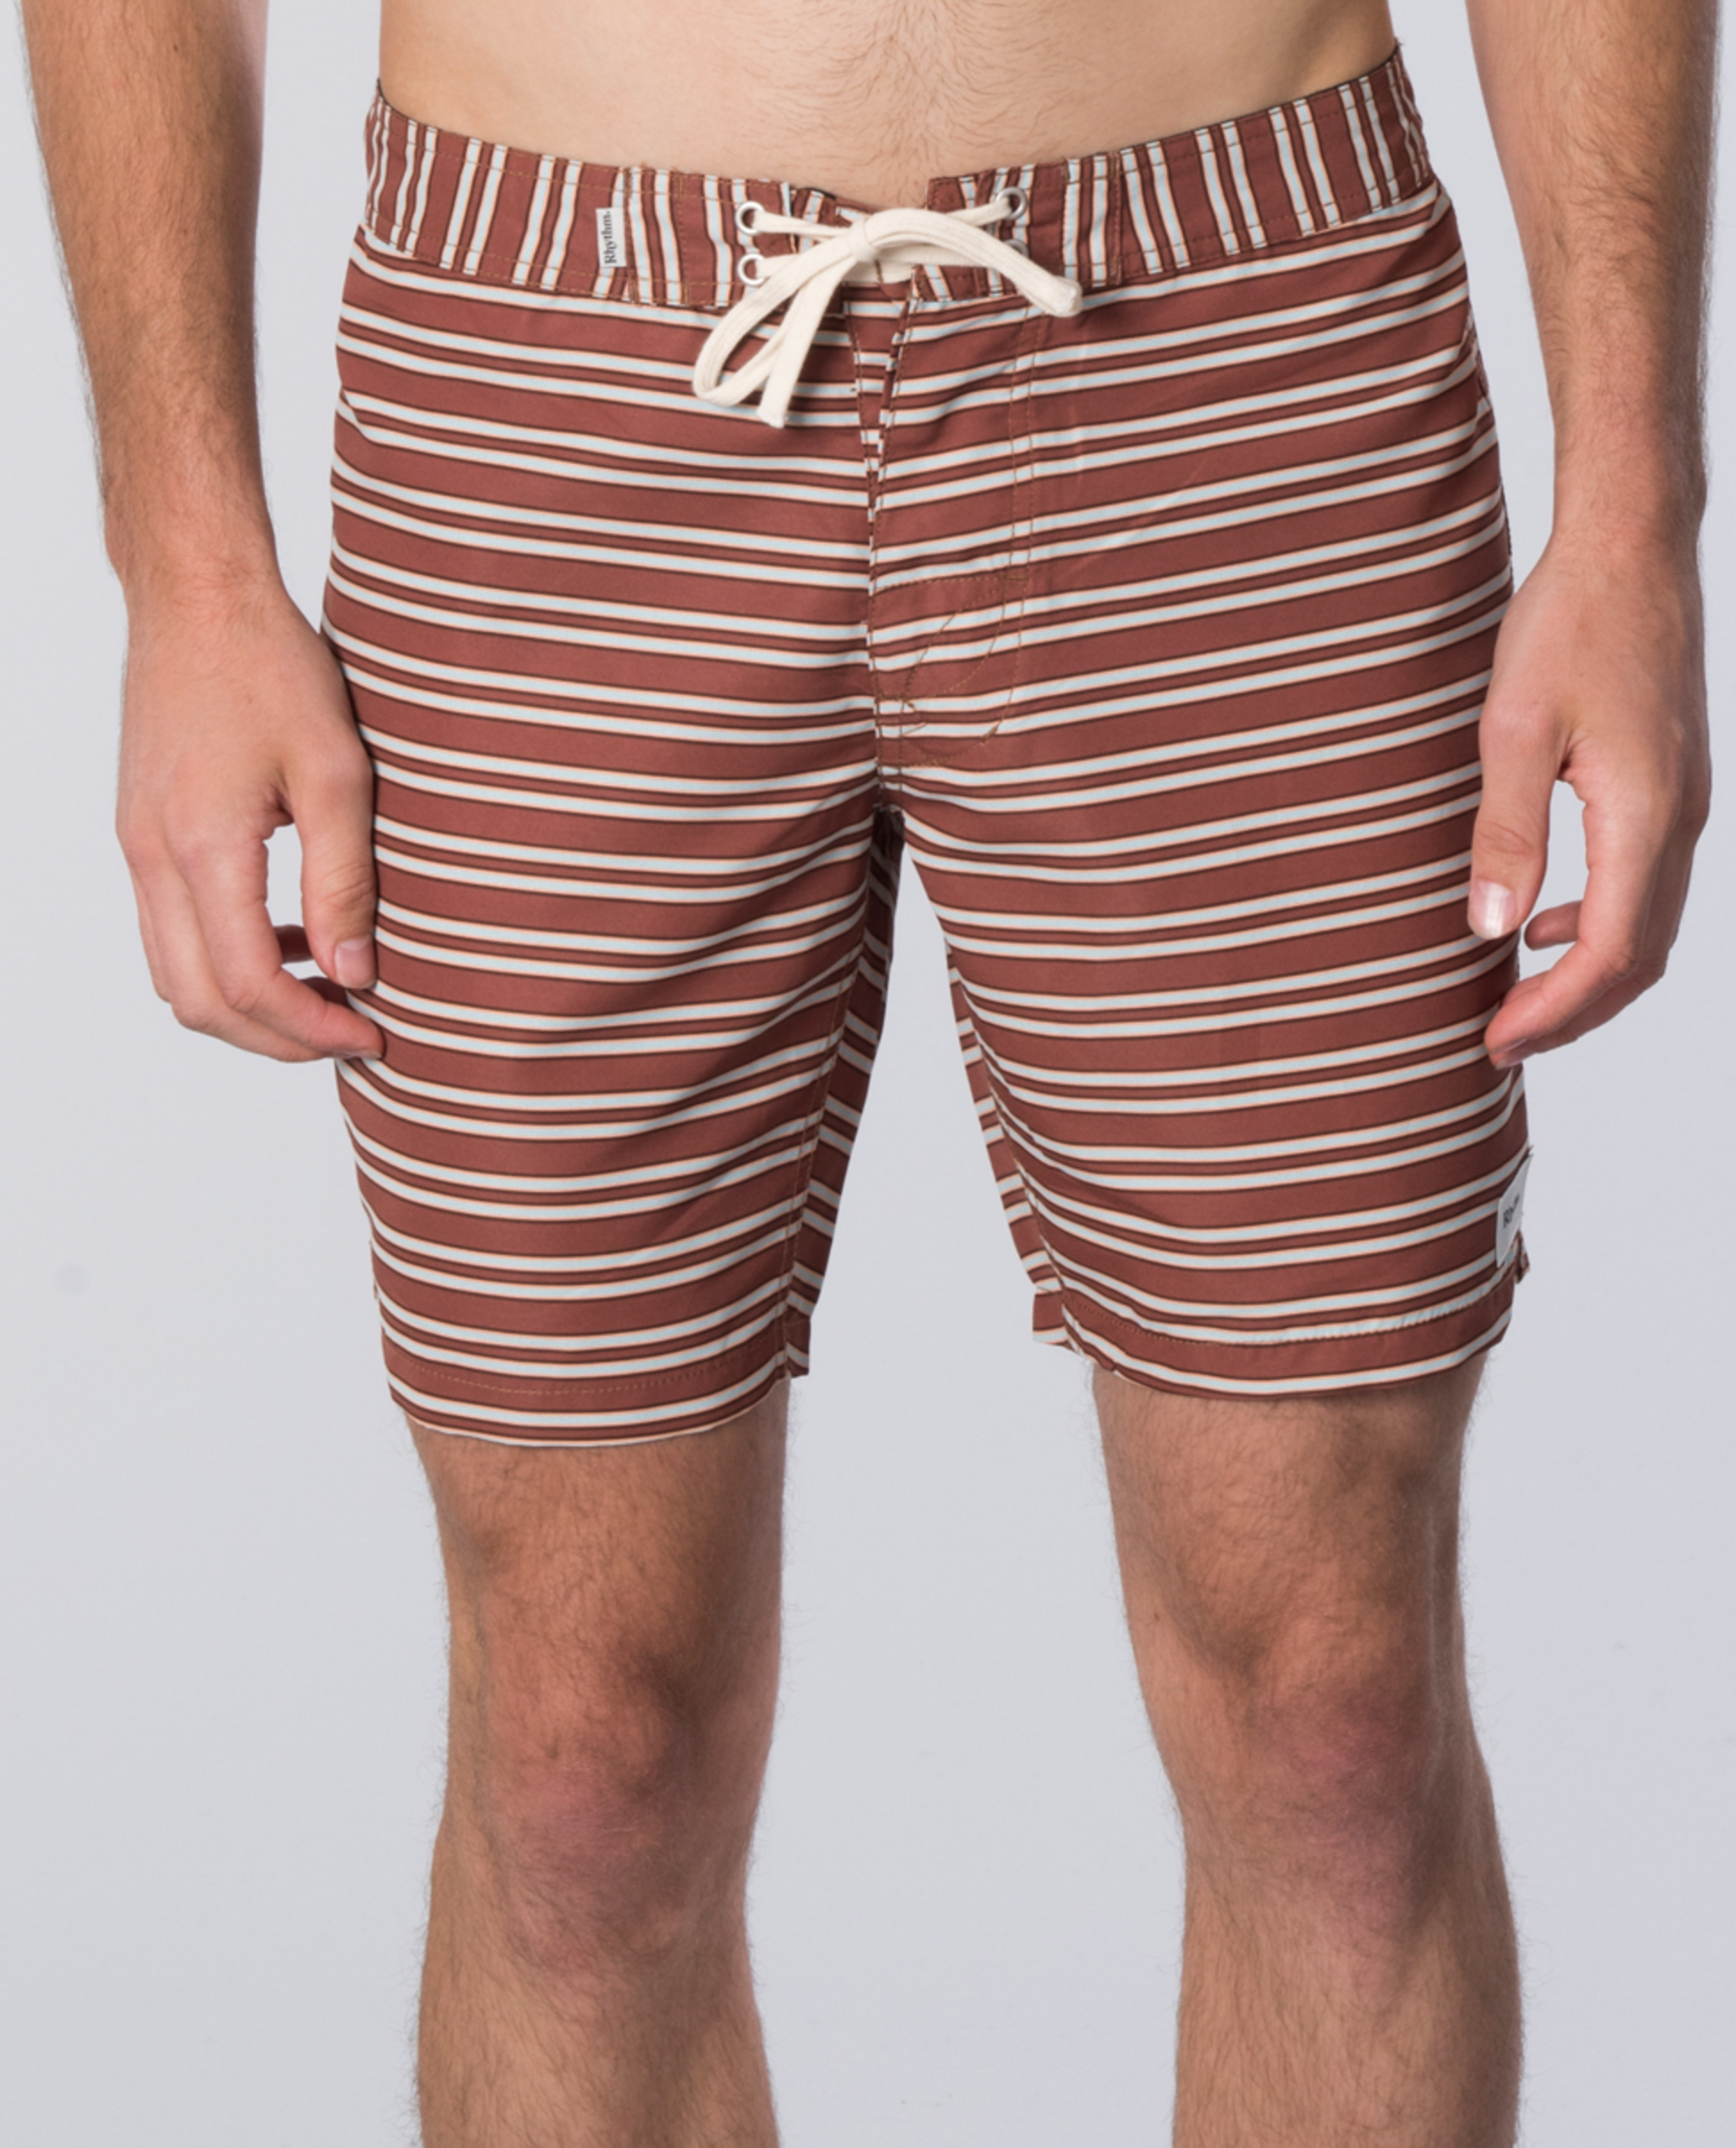 Rhythm Heritage Stripe Trunk Shorts | Ozmosis | Boardshorts